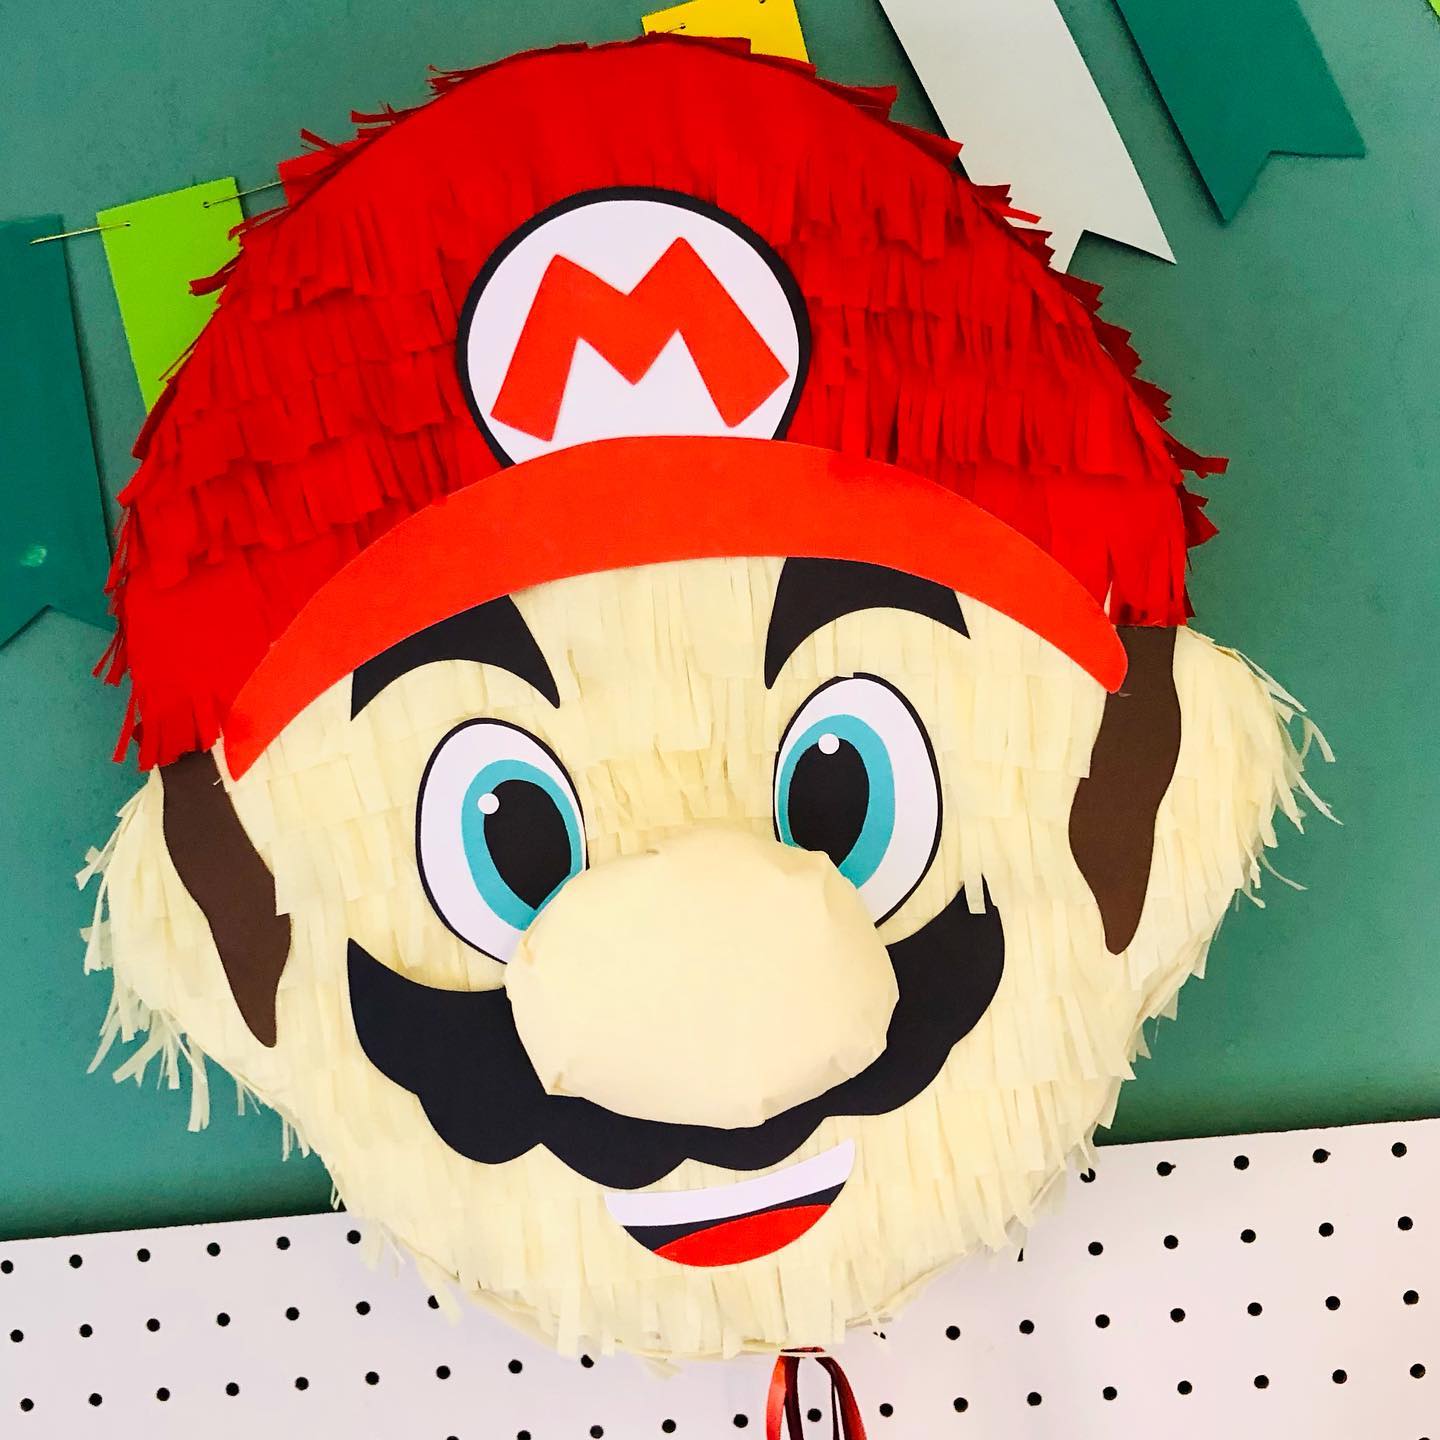 Manualidades de Mario Bros para cumpleaños